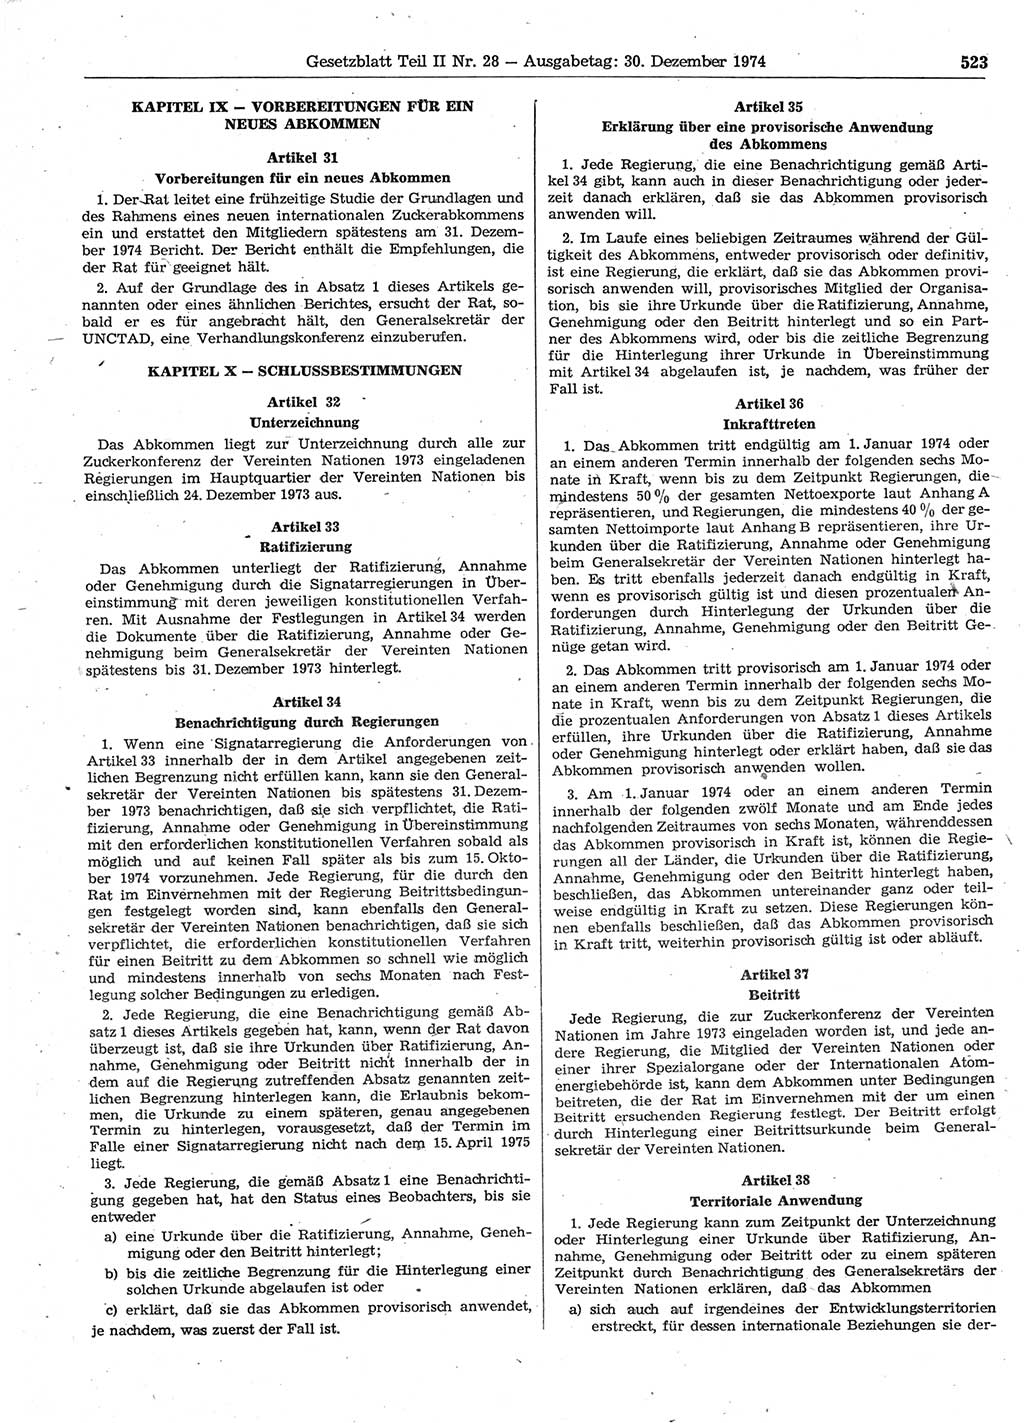 Gesetzblatt (GBl.) der Deutschen Demokratischen Republik (DDR) Teil ⅠⅠ 1974, Seite 523 (GBl. DDR ⅠⅠ 1974, S. 523)